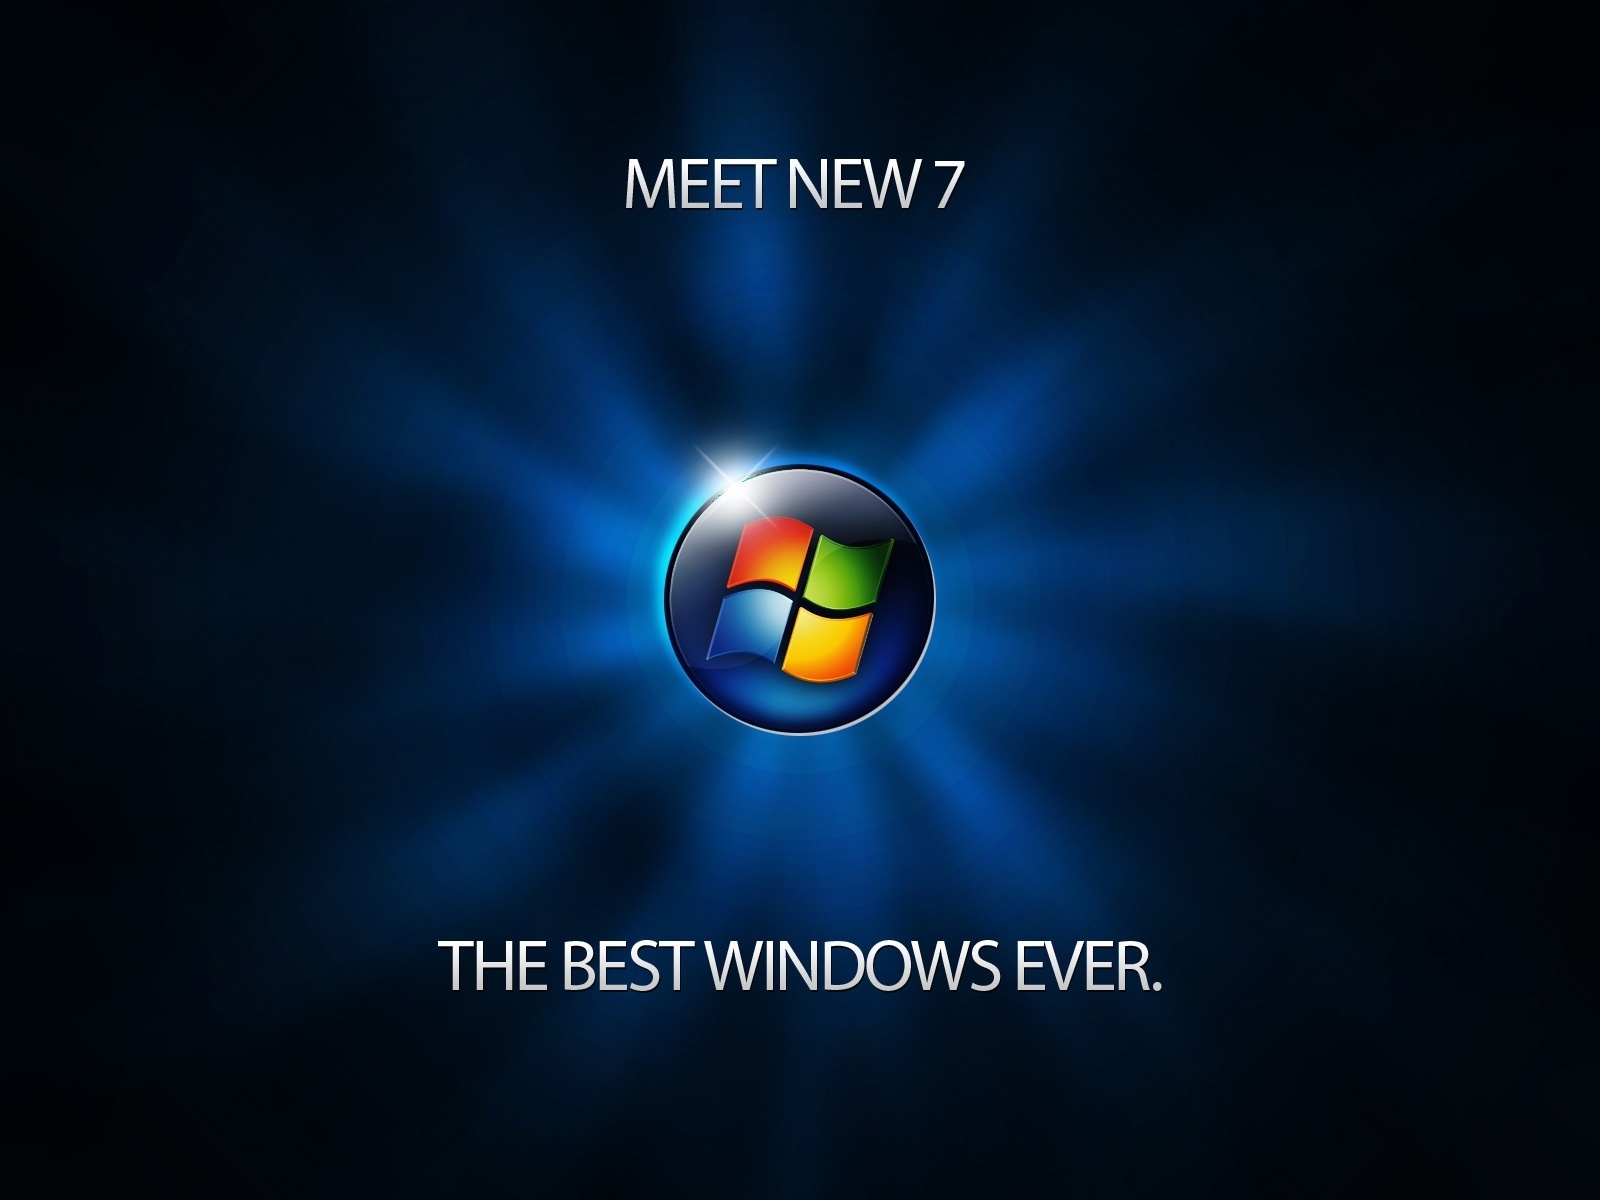 Meet Windows 7 for 1600 x 1200 resolution